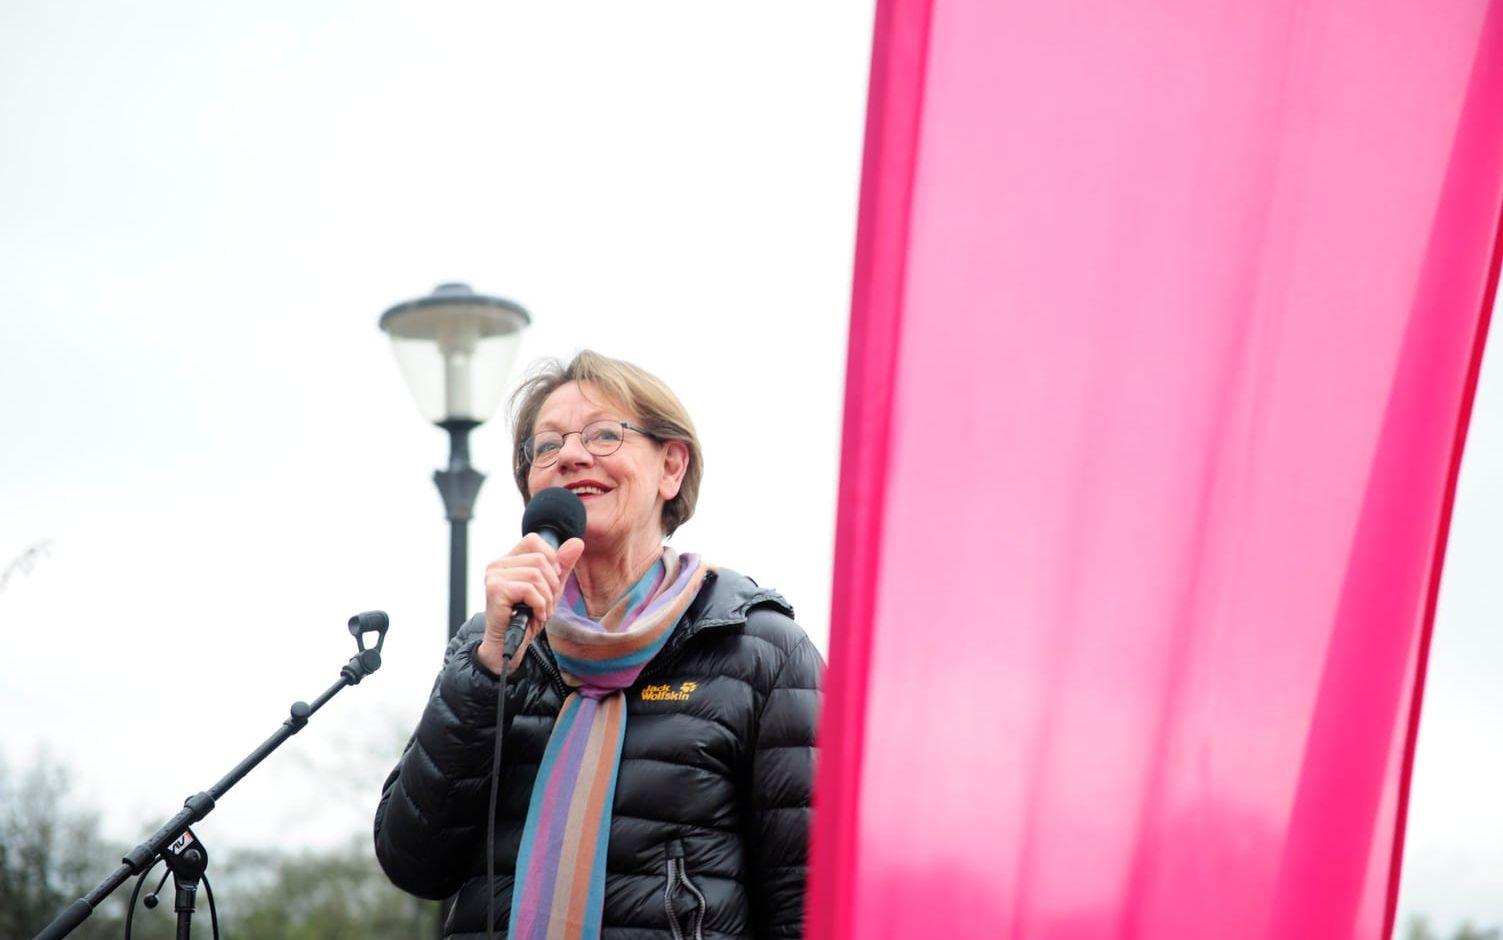 &quot;Arbetarrörelsen och dess värderingar har varit unkna&quot;, säger Gudrun Schyman.